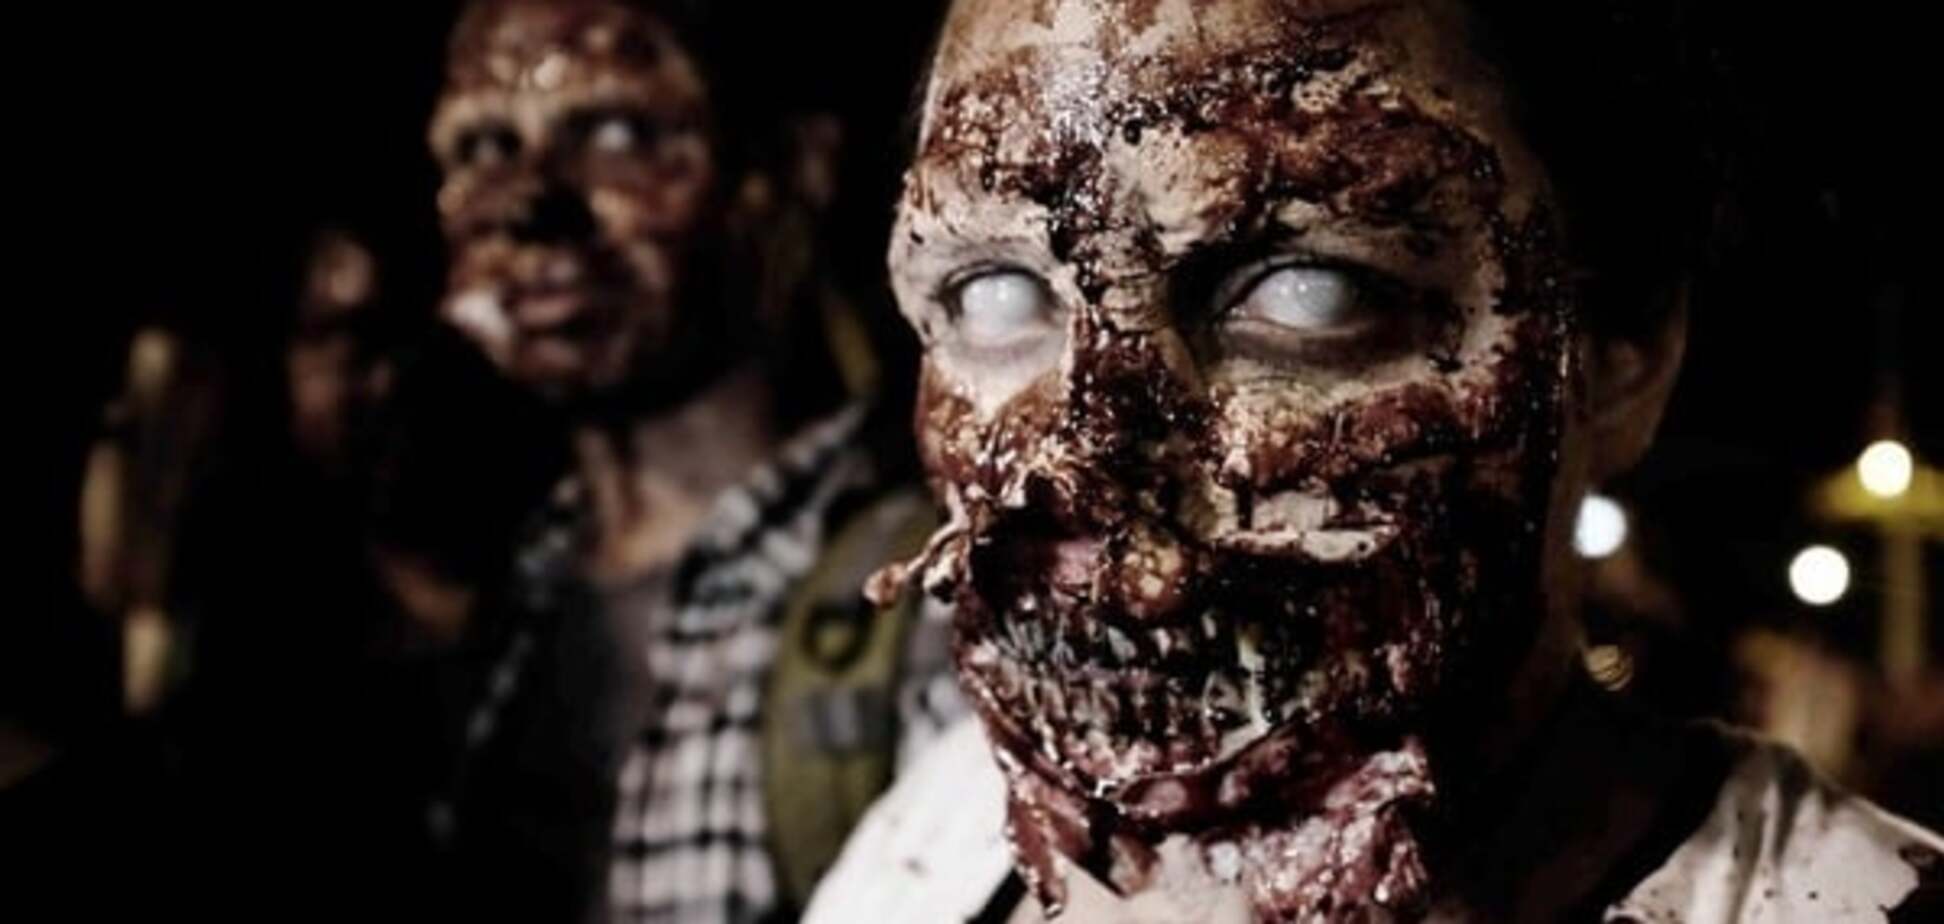 Ученые выяснили, как в природе появляются зомби: видеофакт